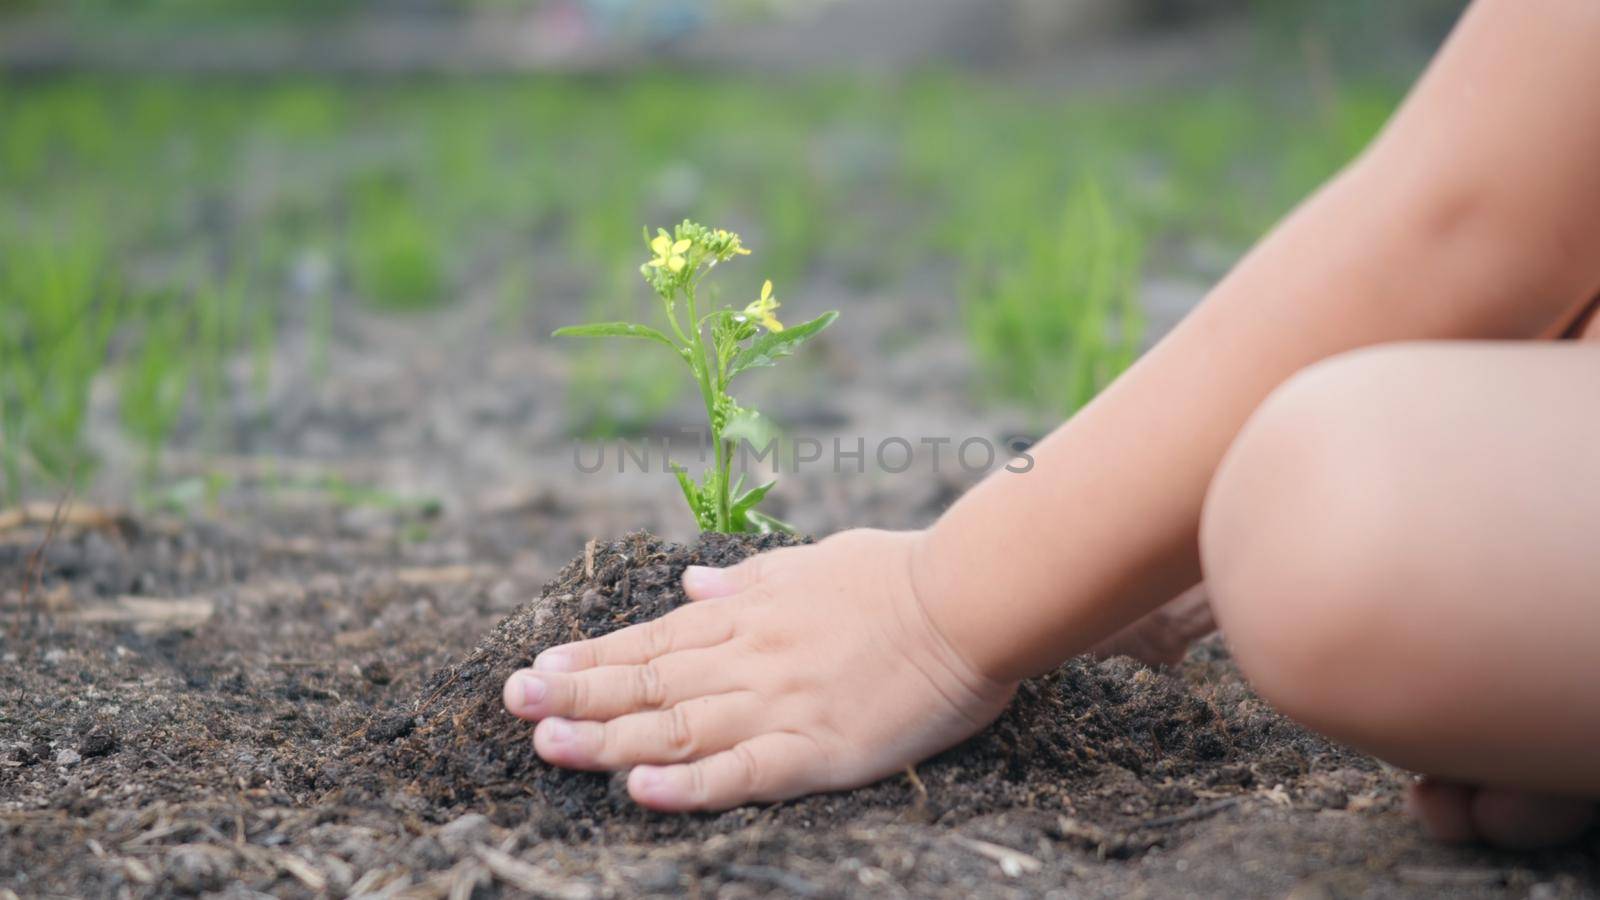 Little kid hand planting seedlings growing a tree in soil on the garden by Sorapop